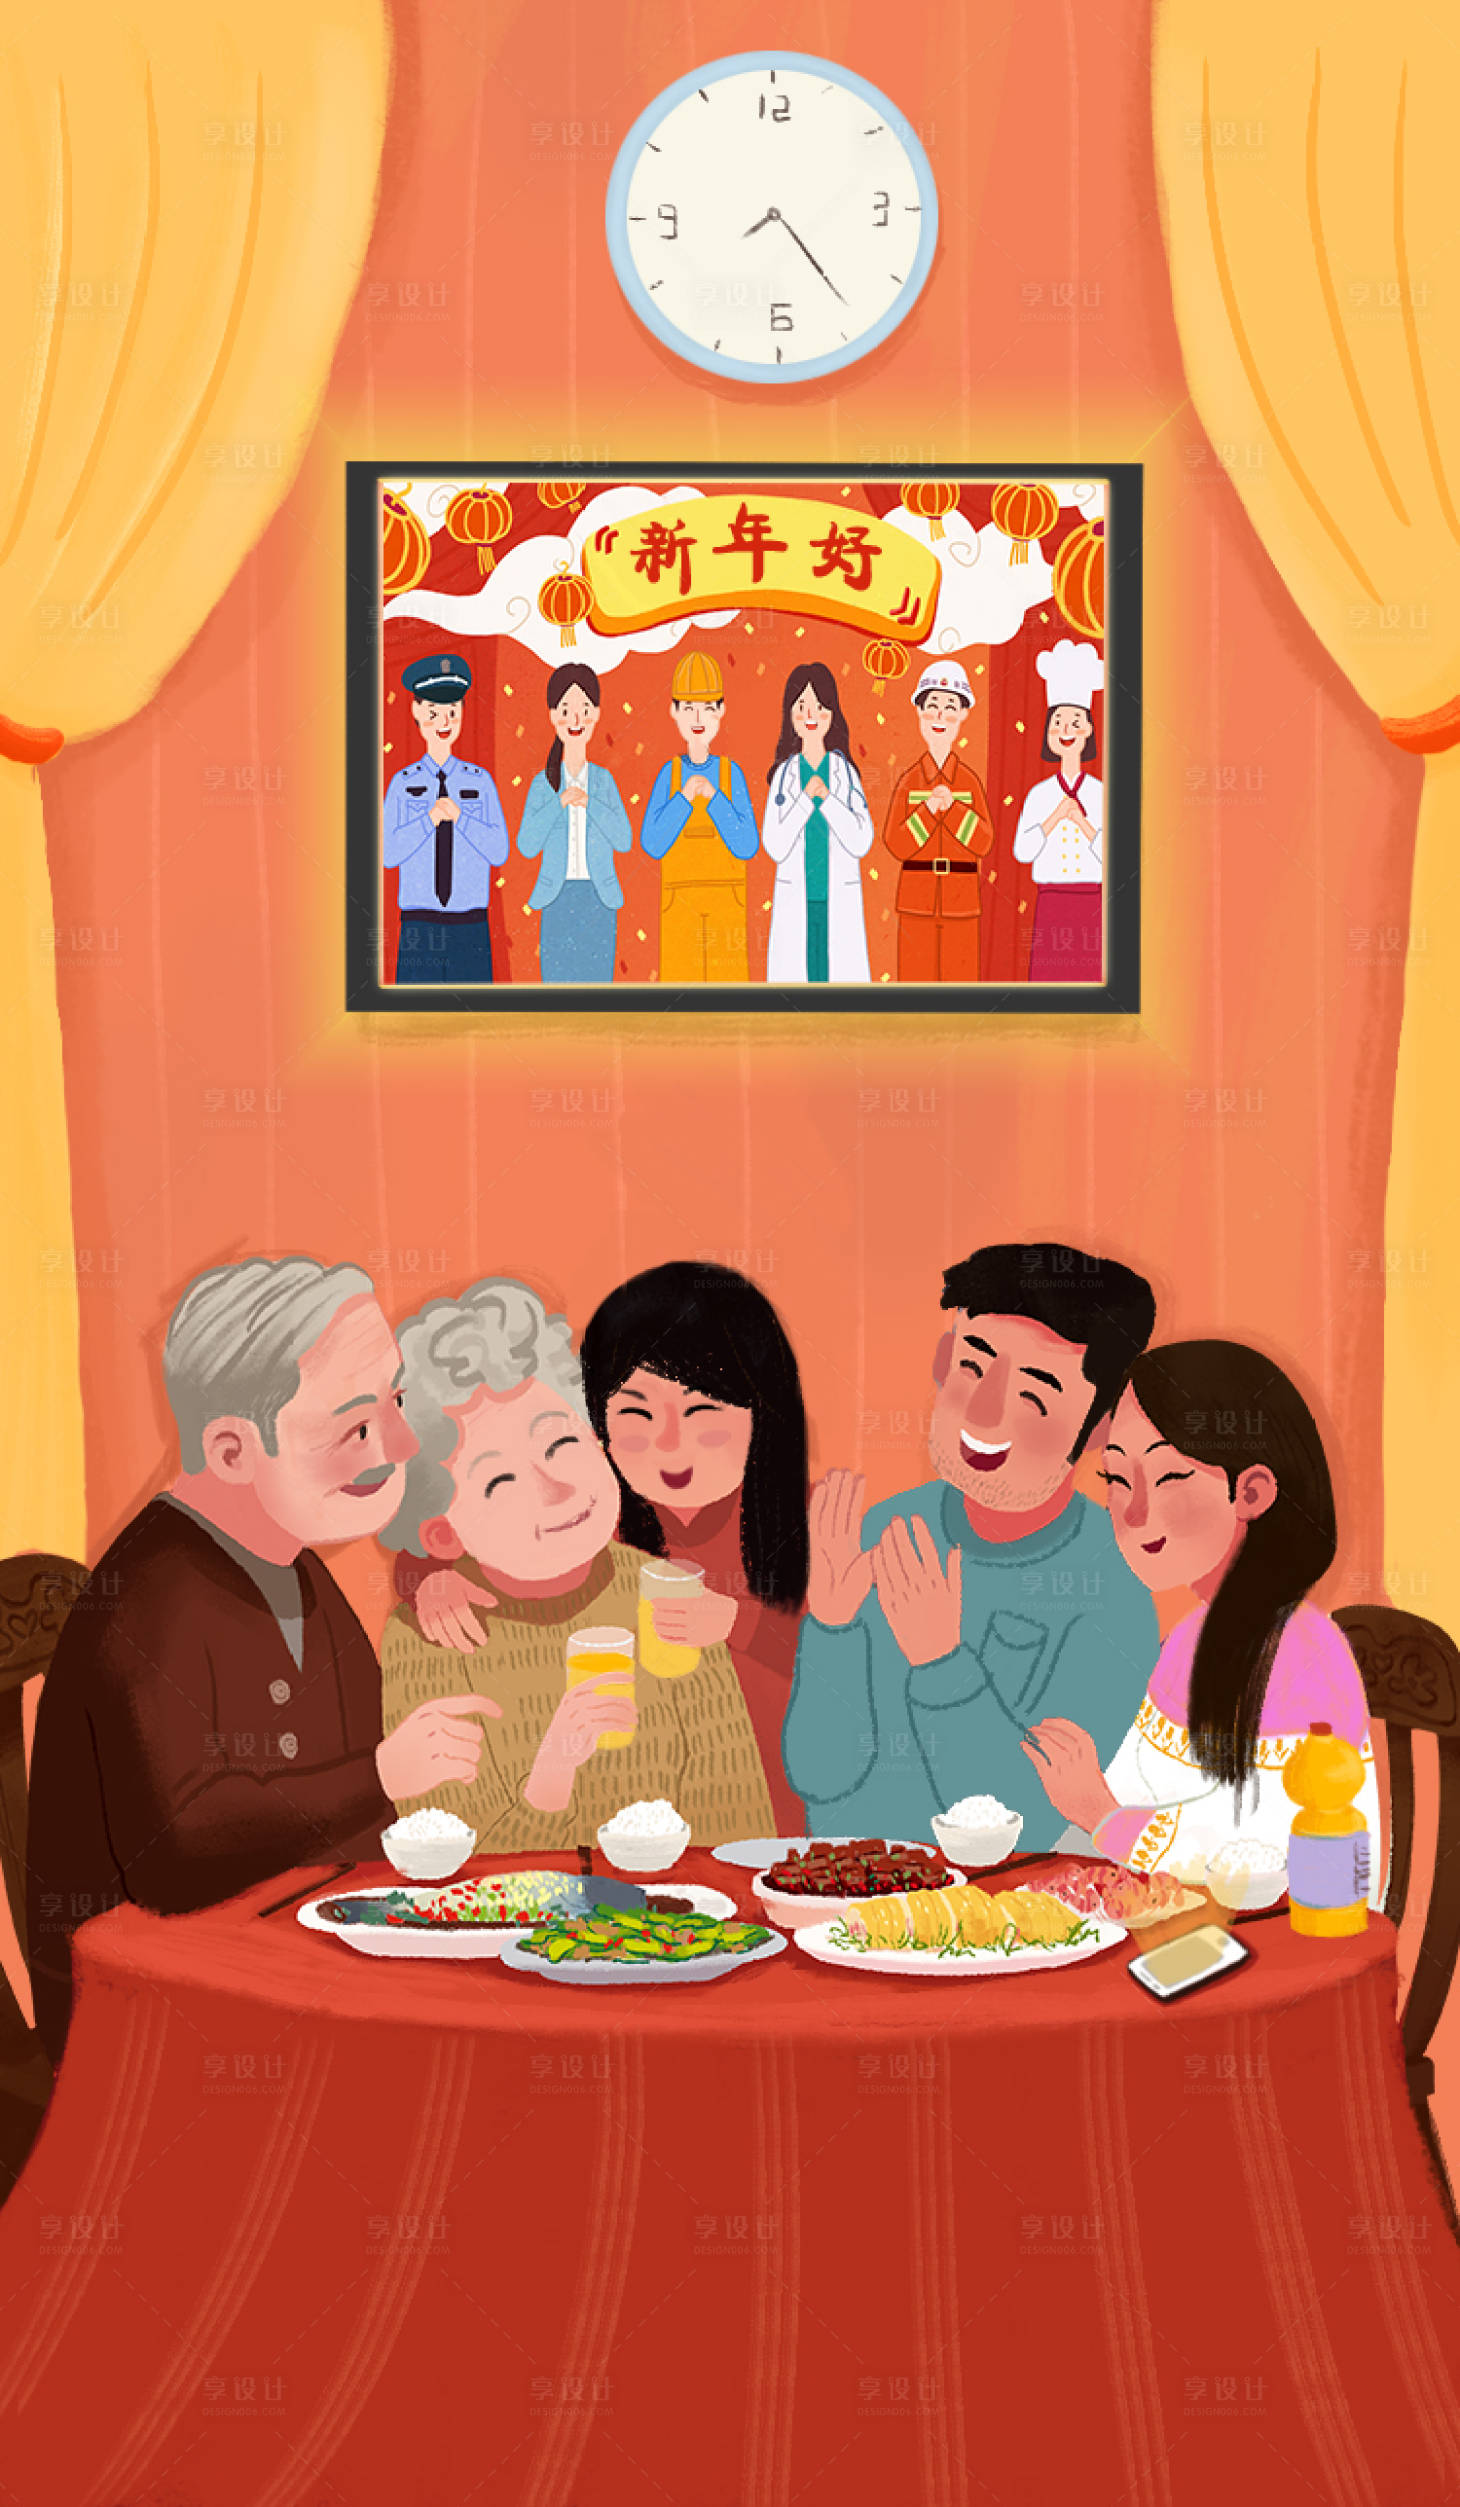 插画 中国传统节日 春节 除夕 过年 年夜饭 一家人 团圆饭 电视 时钟